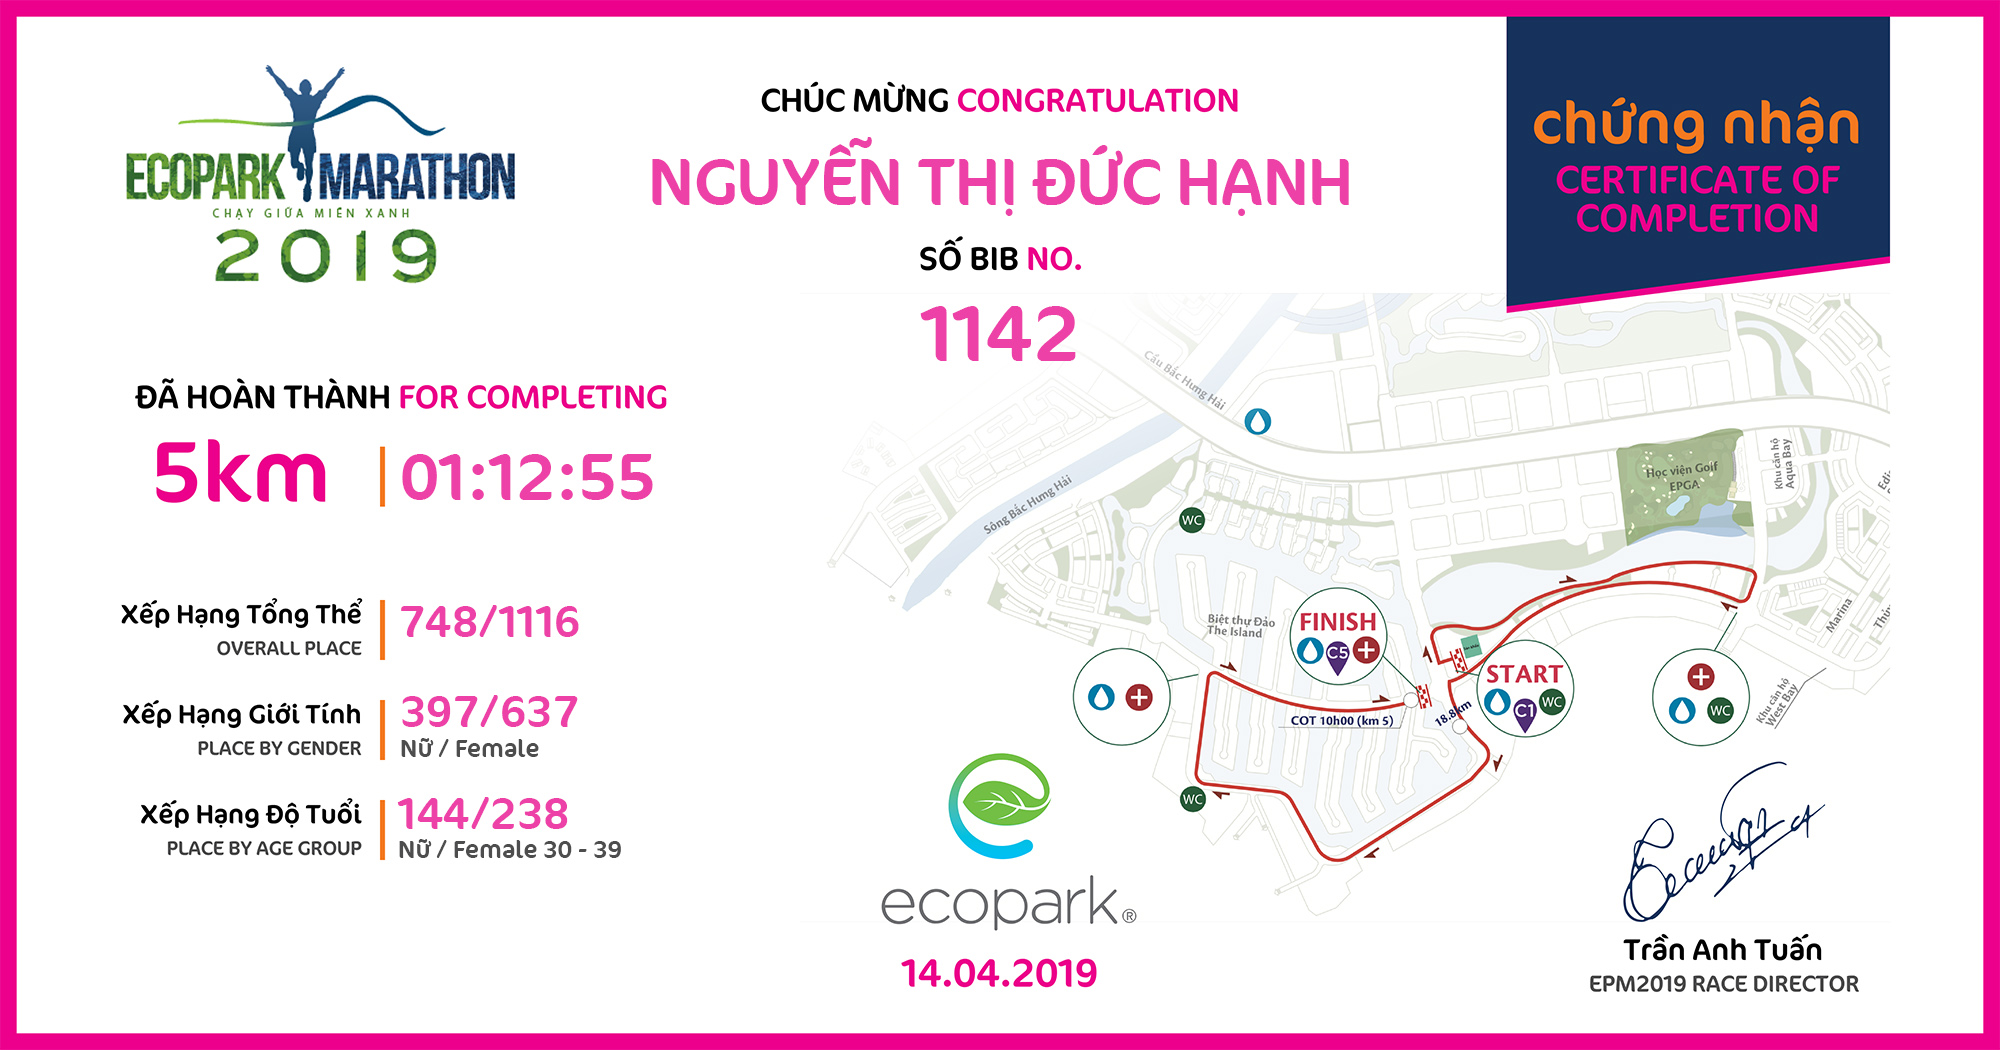 1142 - Nguyễn Thị Đức Hạnh